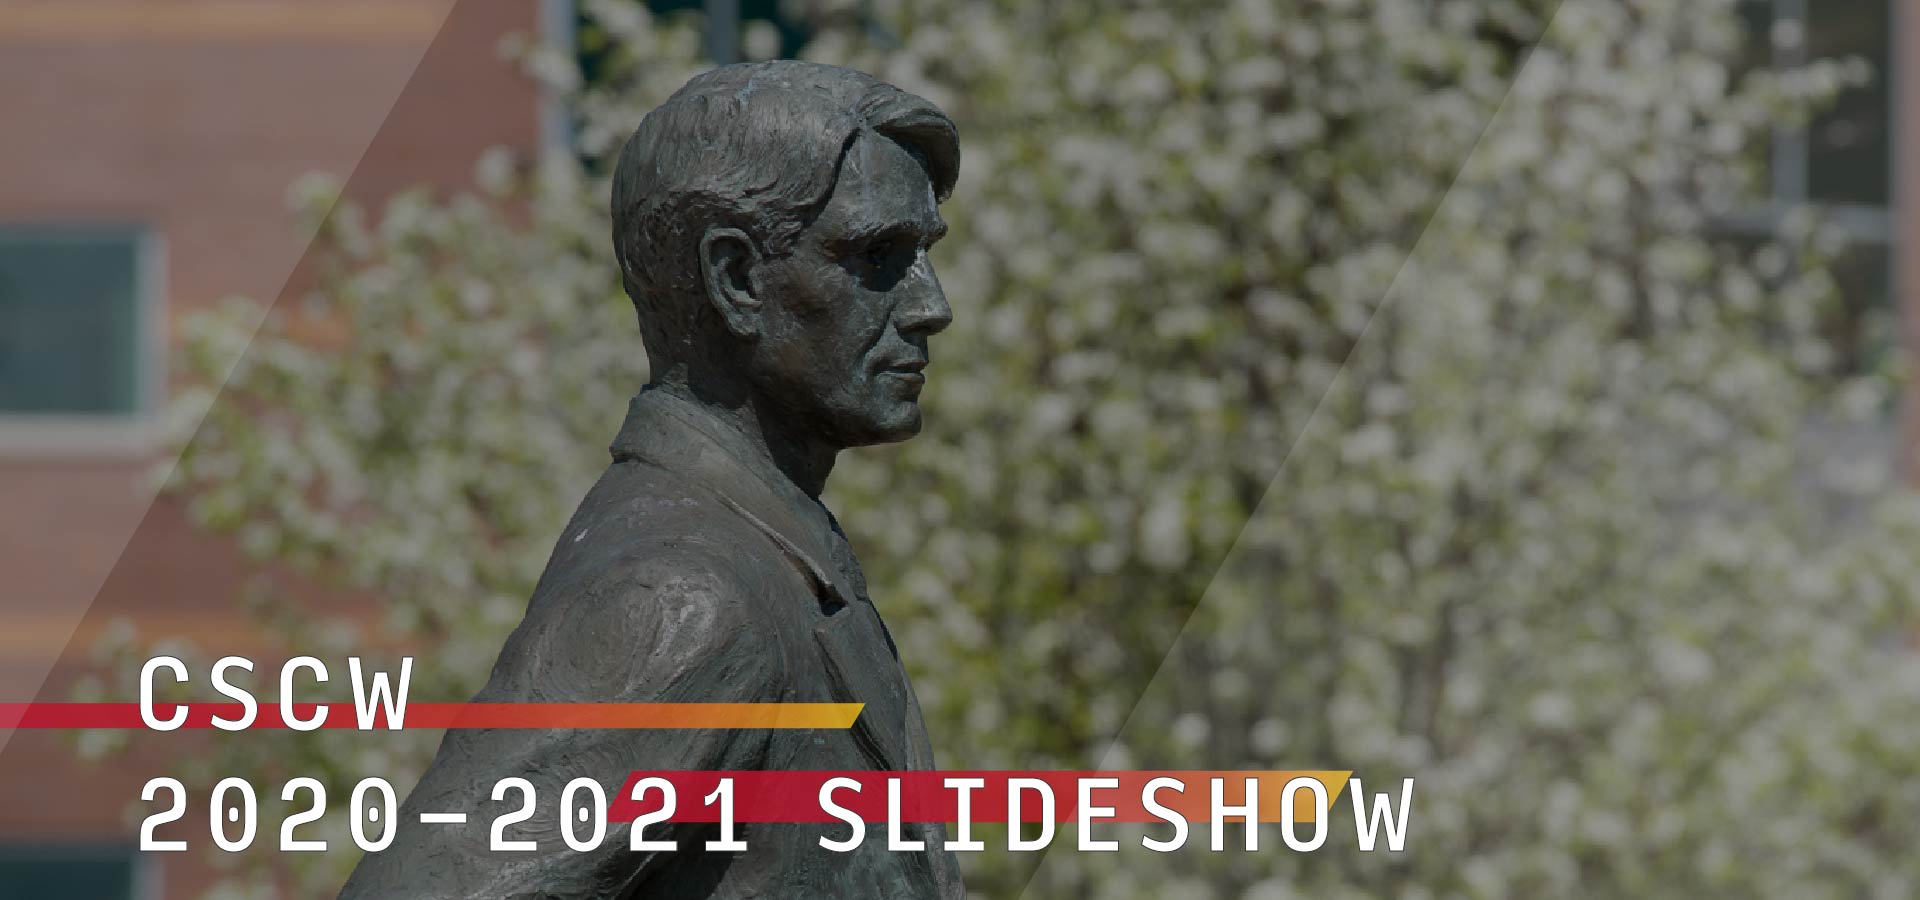 CSCW 2020-2021 Slideshow